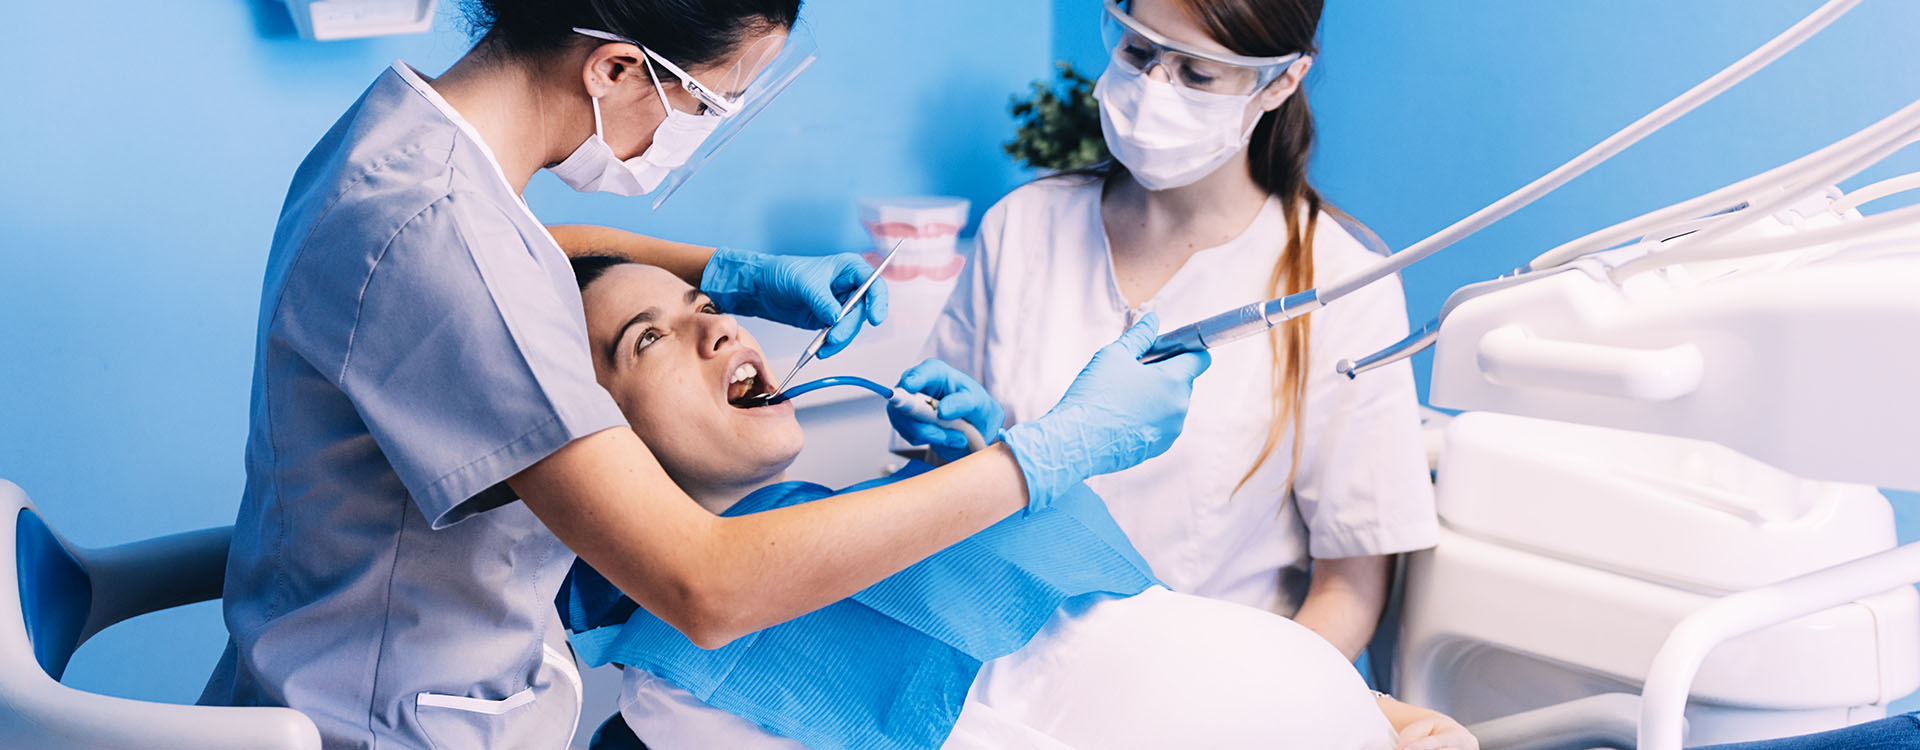 Clínica Dental Andrea Compte, tu Centro Odontológico especializado. Odontología en Sant Jordi. Dentistas con un paciente durante una intervención dental.